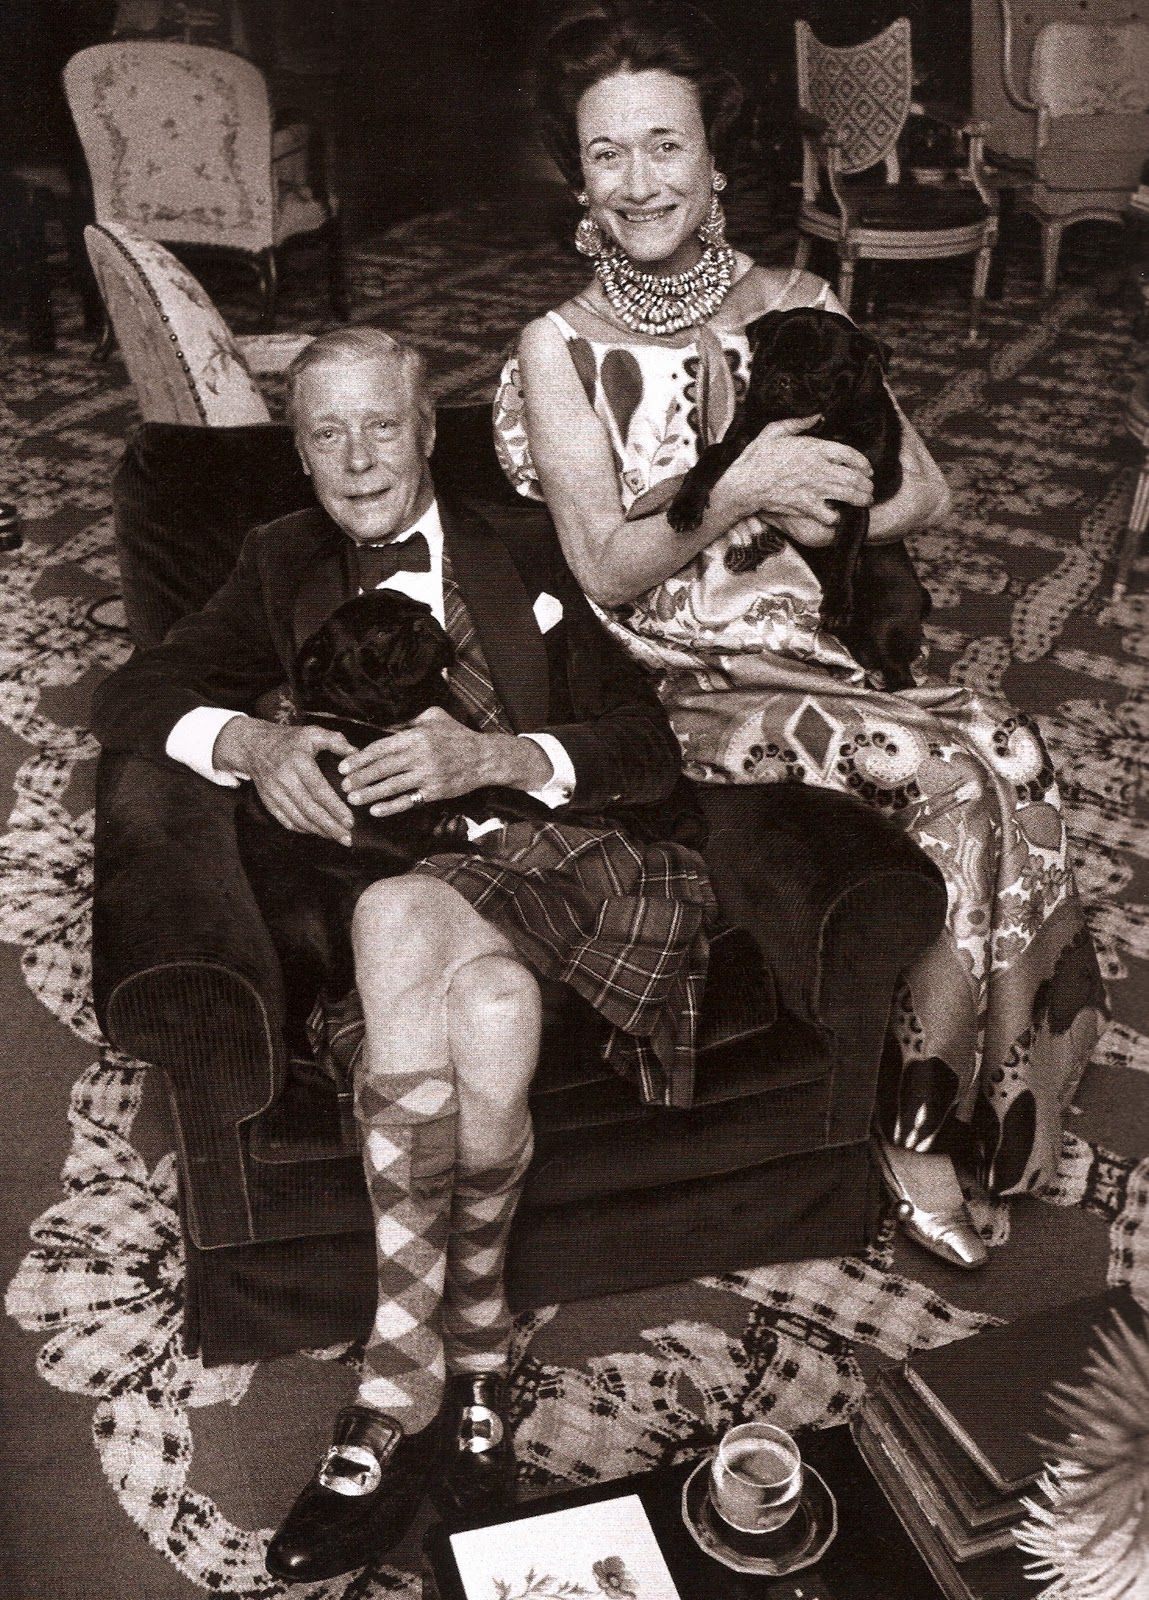 The Duke & the Duchess of Windsor